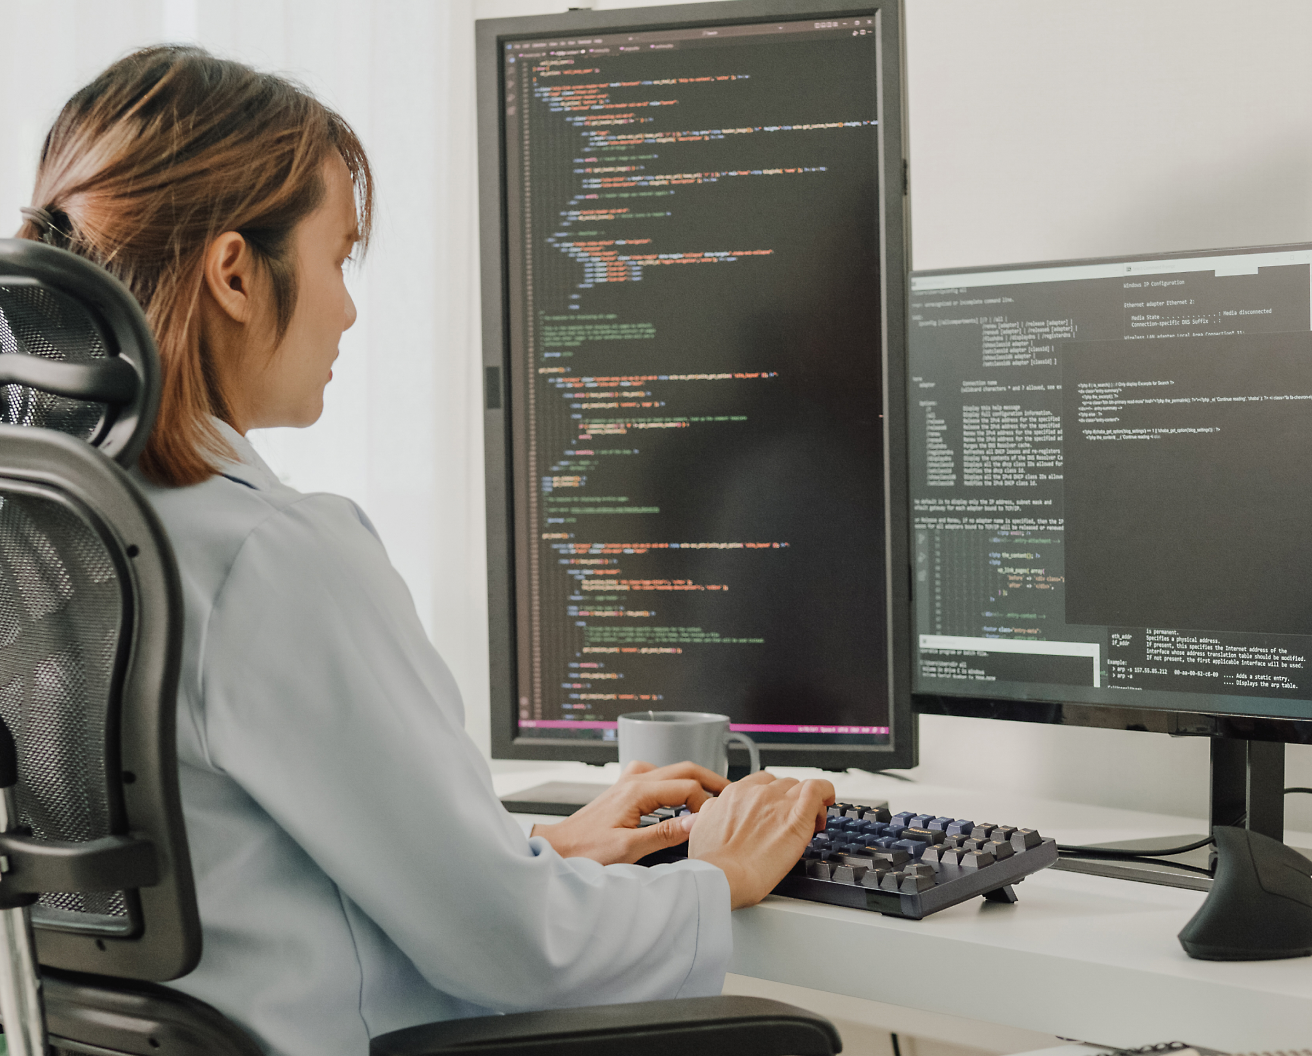 En kvinde sidder i en kontorstol og koder på en computer med flere skærme, der viser programmeringskode.